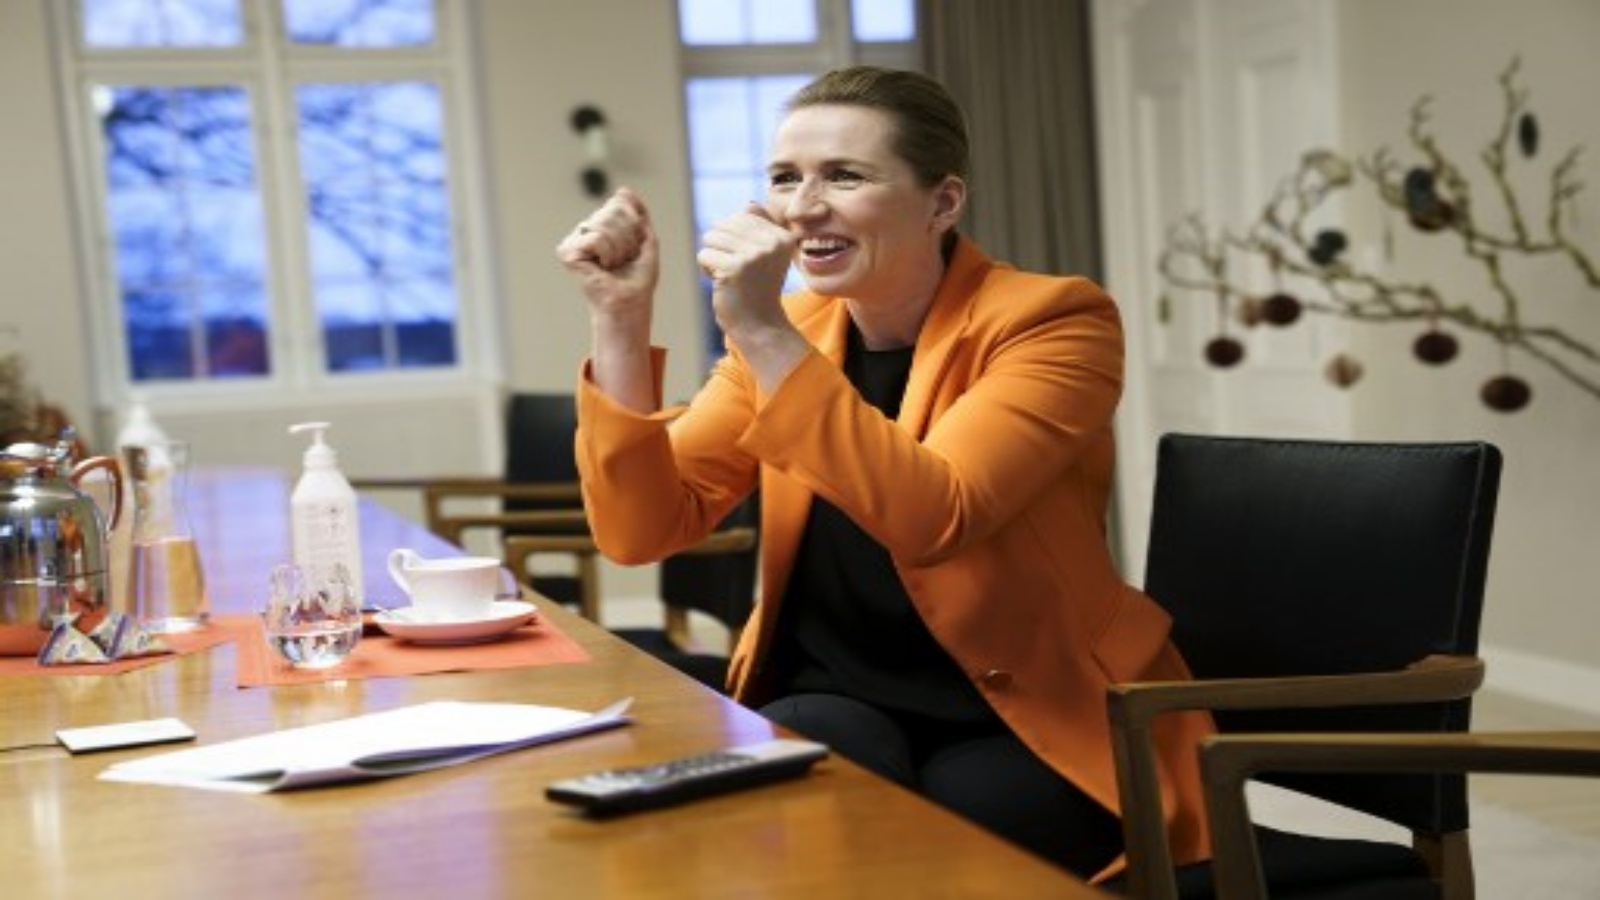 رئيسة الوزراء الدنماركية ميت فريدريكسن وهي تتبع أول تلقيح عبر رابط فيديو من مقر إقامتها في مارينبورغ ، شمال كوبنهاغن ، حيث تتلقى جيتي مارجريت فريدريكسن (83) لقاح فيروس كورونا Covid-19 في 27 ديسمبر 2020.